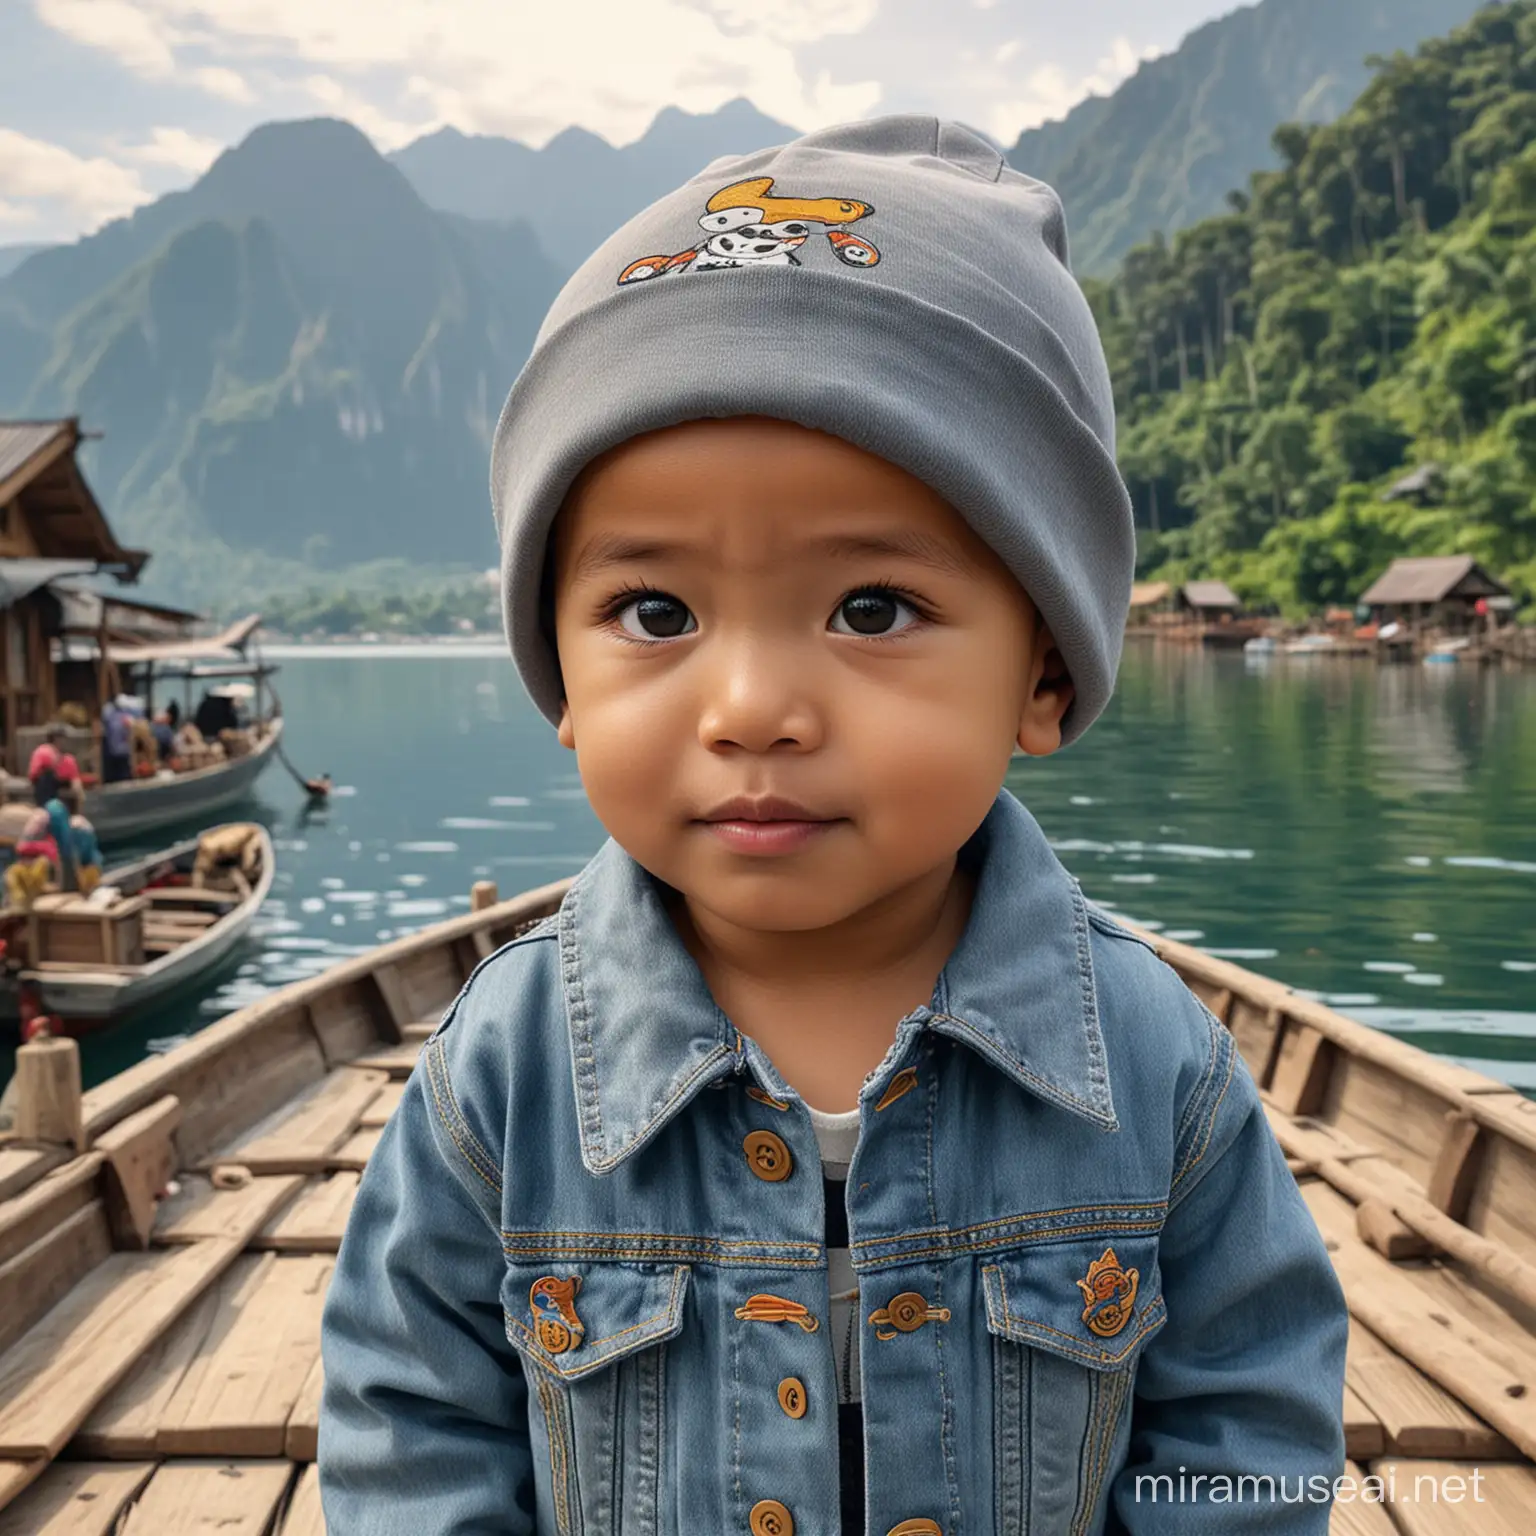 Seorang anak laki-laki Indonesia ganteng berusia 2 tahun, botak, mengenakan beanie berwarna abu-abu menghadap ke depan,jaket jeans bergambar kartun, sedang di sampan besar beratap kayu, latar belakang, beberapa sampan di danau gambar asli seperti ultra HD 8K asli